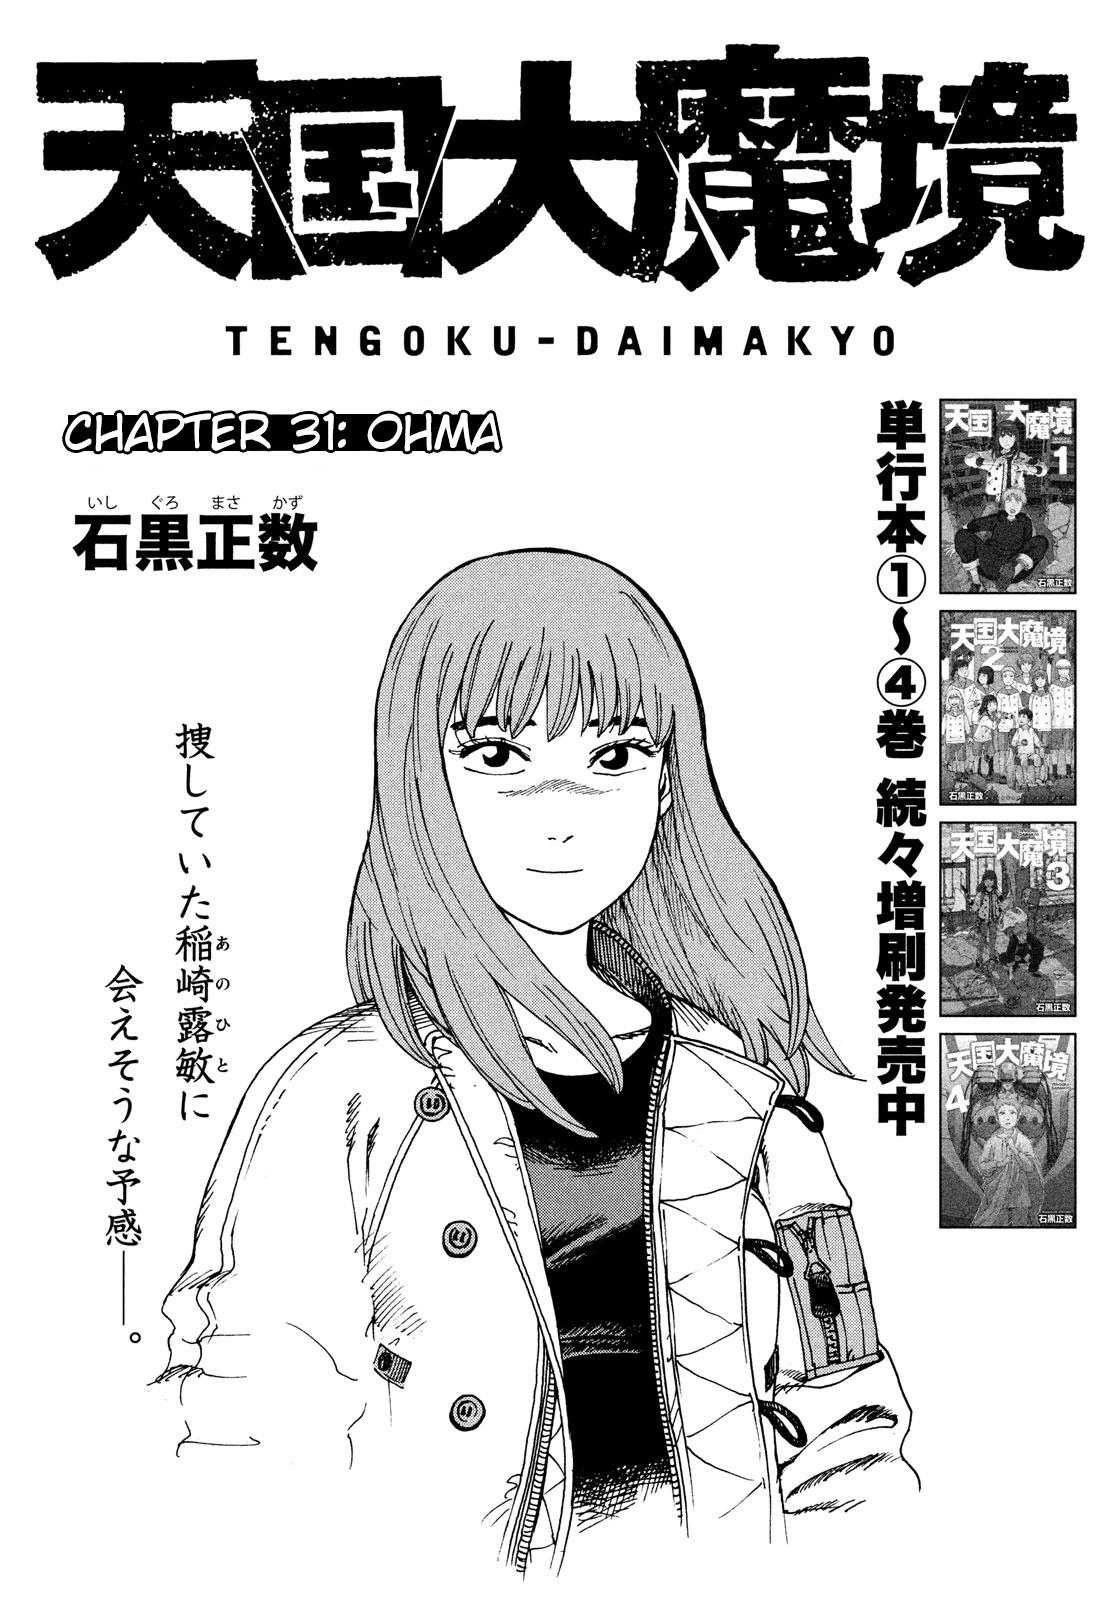 Read Tengoku Daimakyou Vol.4 Chapter 21: Immortalites ➃ - Manganelo